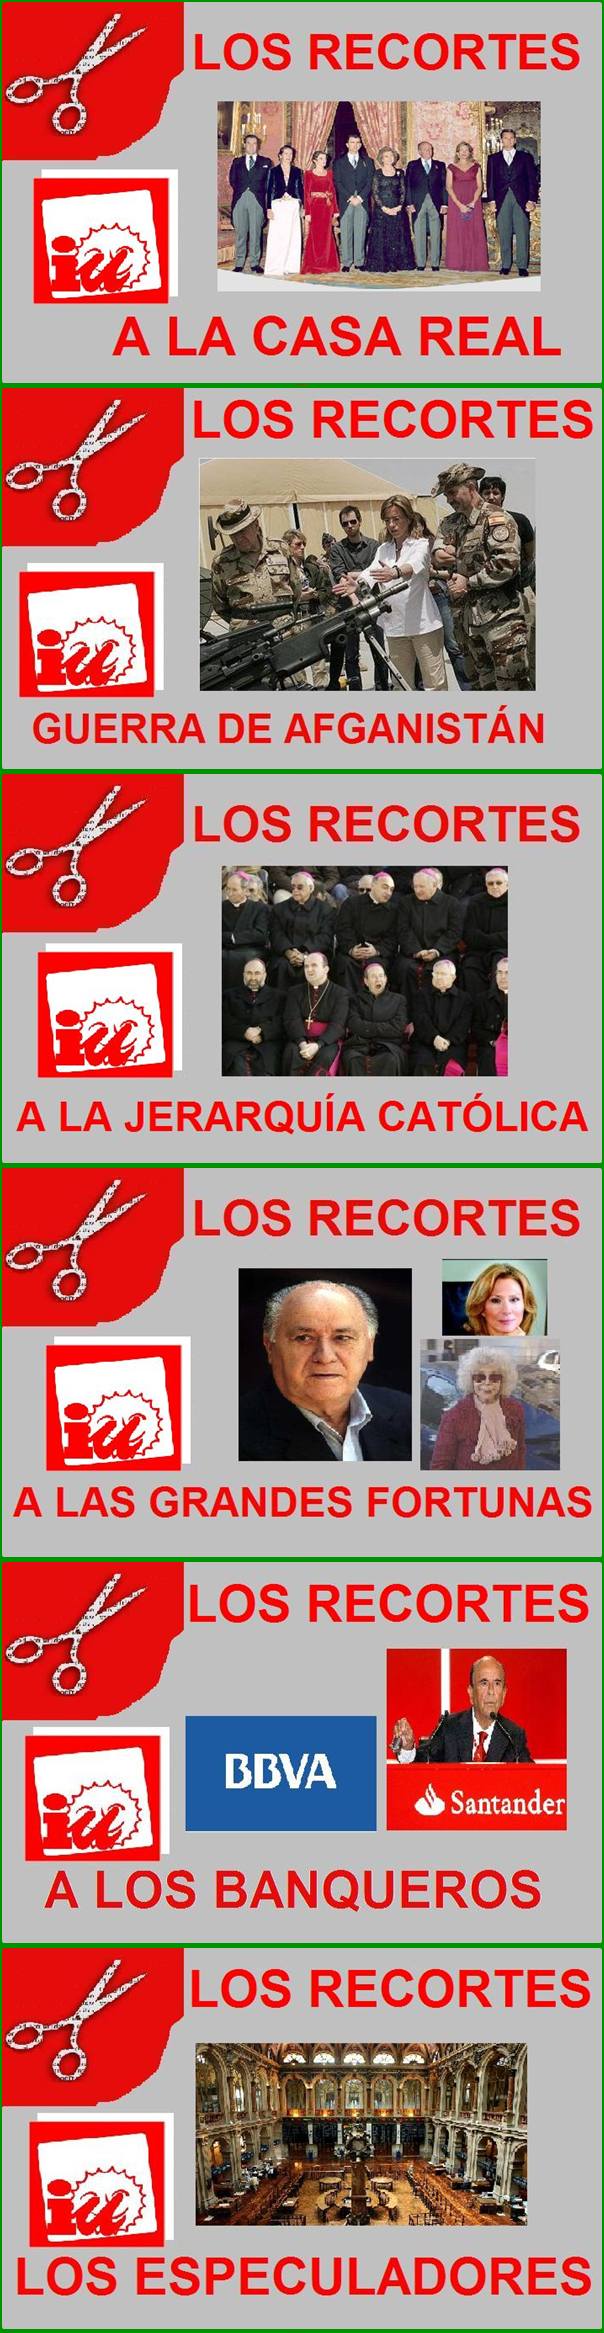 Carteles mostrados por los diputados andaluces de IU en el Parlamento en señal de protesta